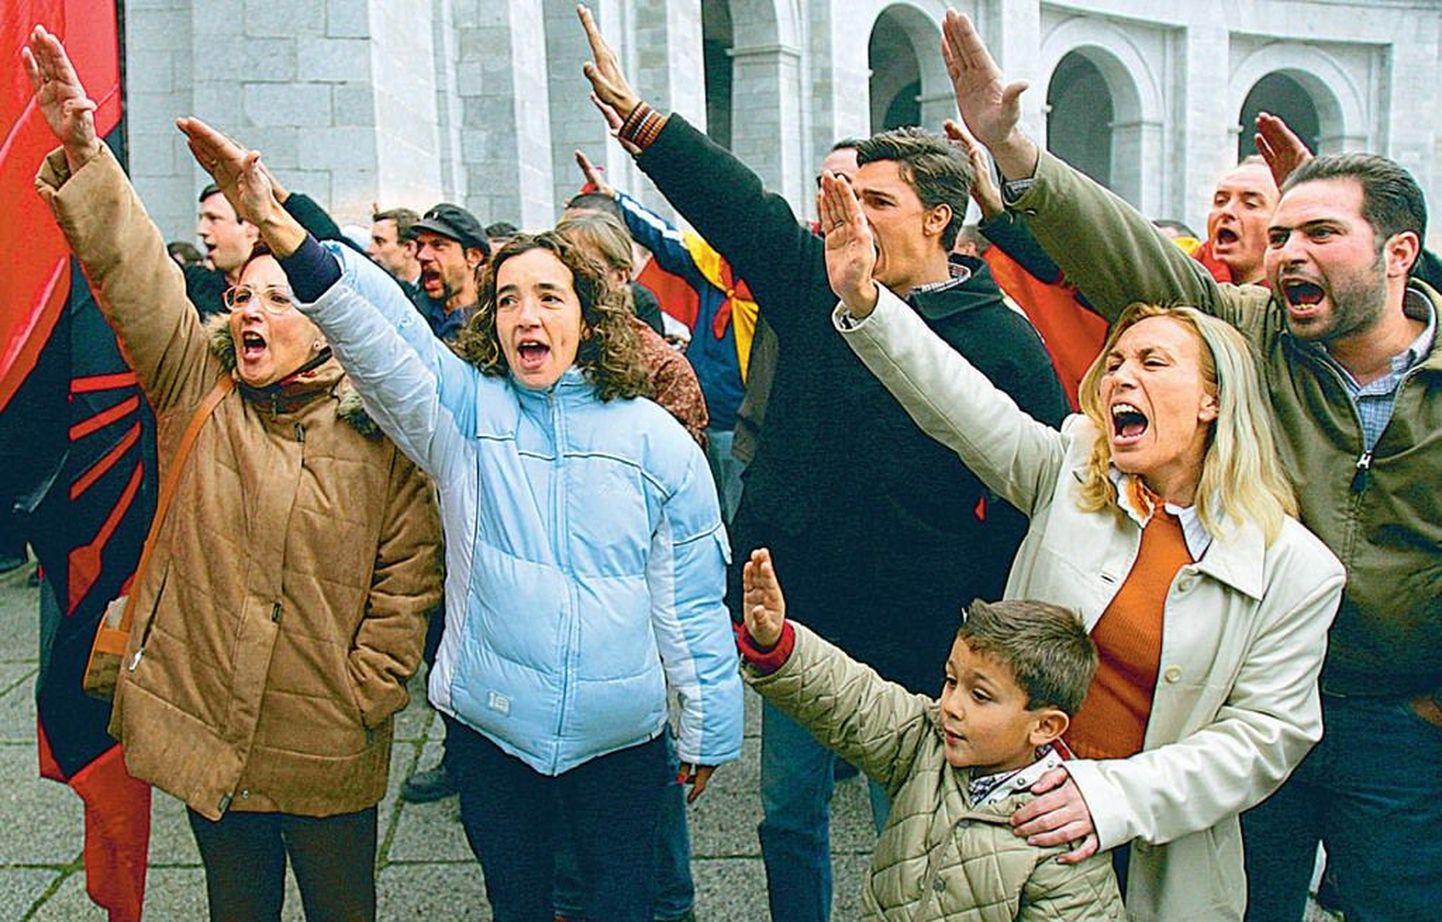 Üleeile kogunes igas vanuses inimesi üle kogu Hispaania tähistama kindral Francisco Franco 30. surma-aastapäeva, tõstes diktaatori mälestuseks parema käe diagonaalis taeva poole.